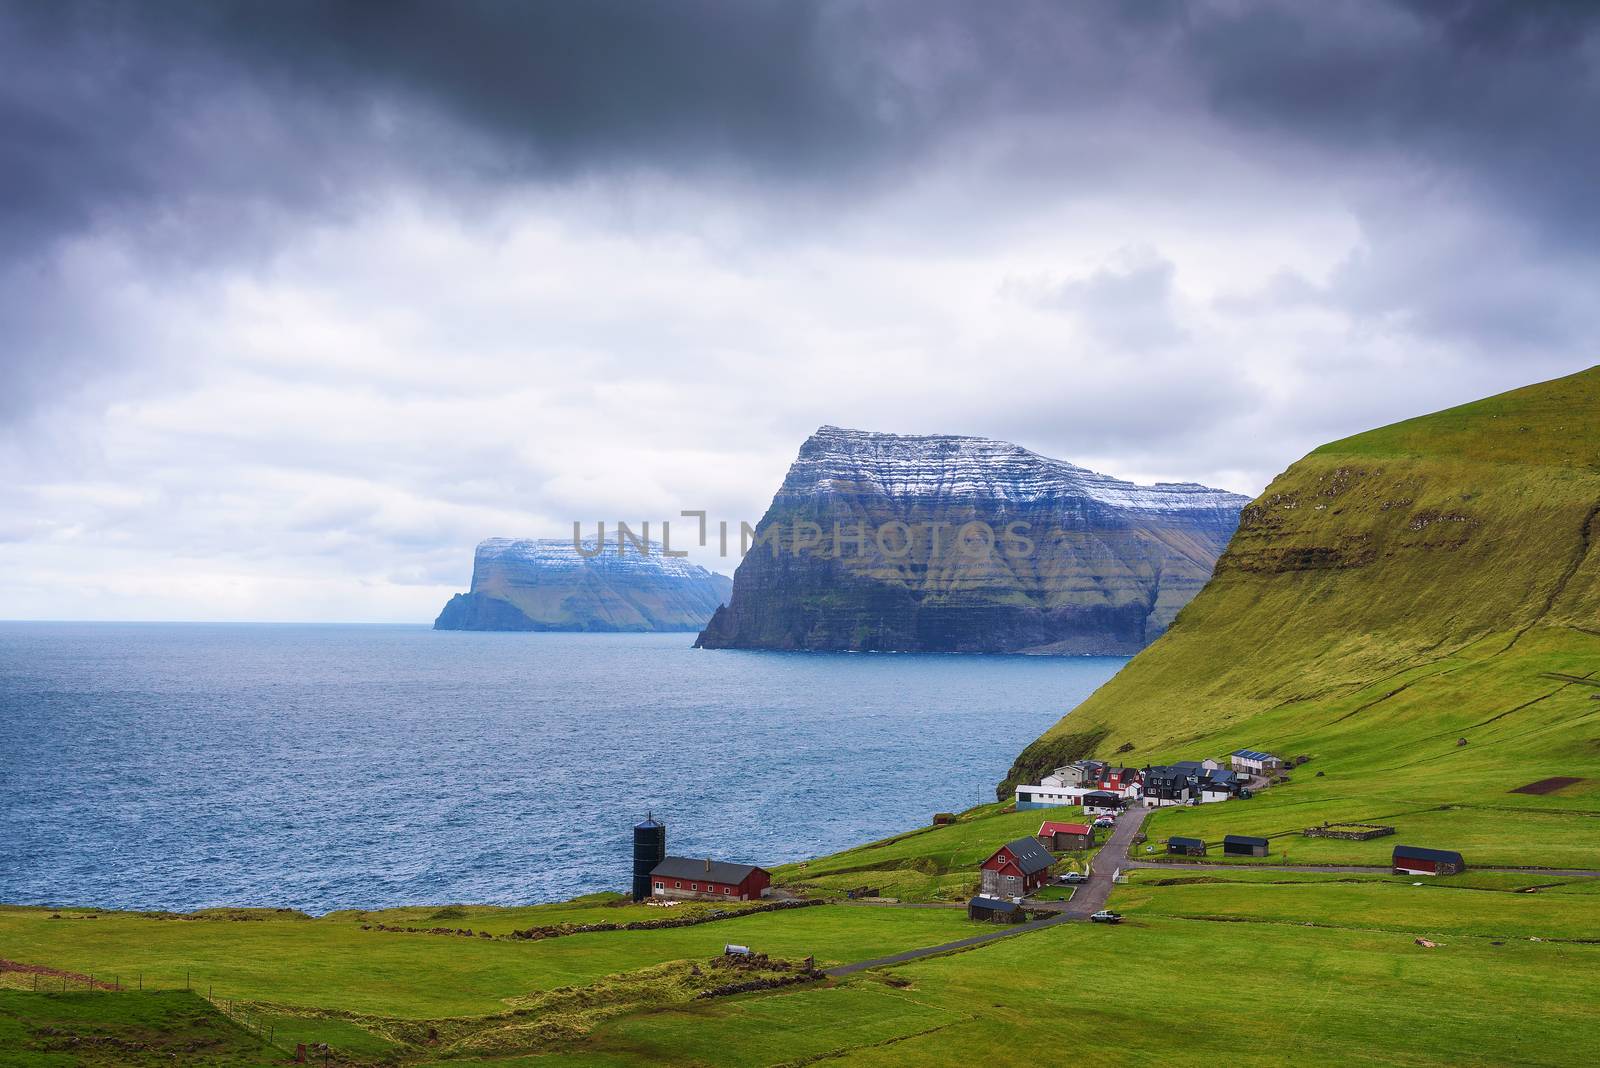 Village of Trollanes on the island of Kalsoy in Faroe Islands, Denmark by nickfox